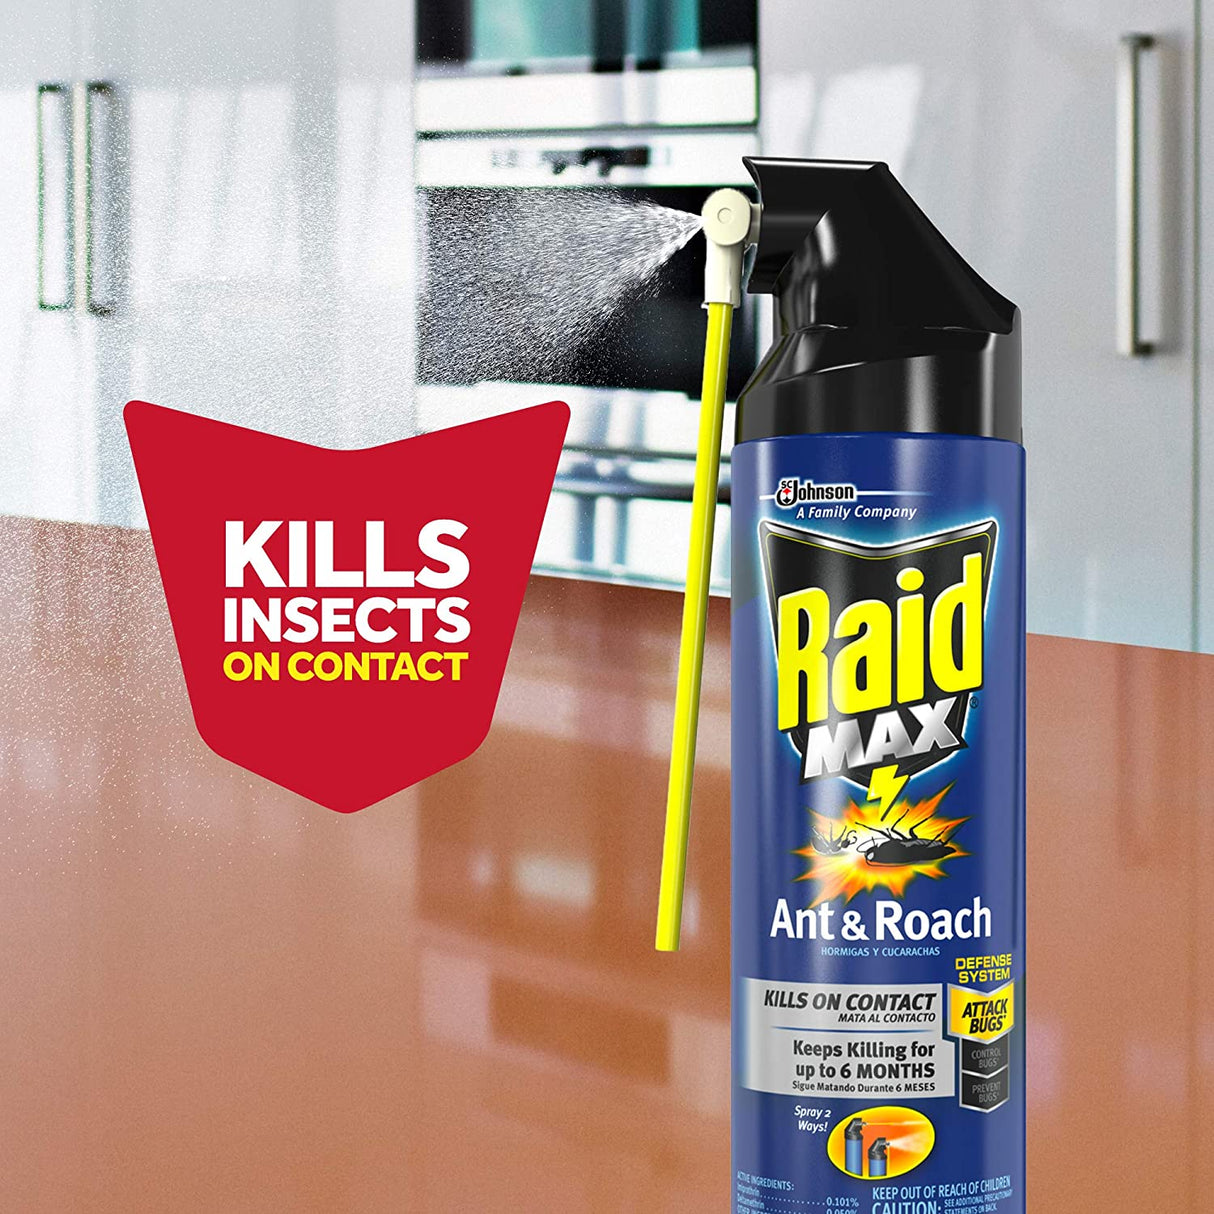 Raid Max Spray para hormigas y cucarachas, 14.5 oz